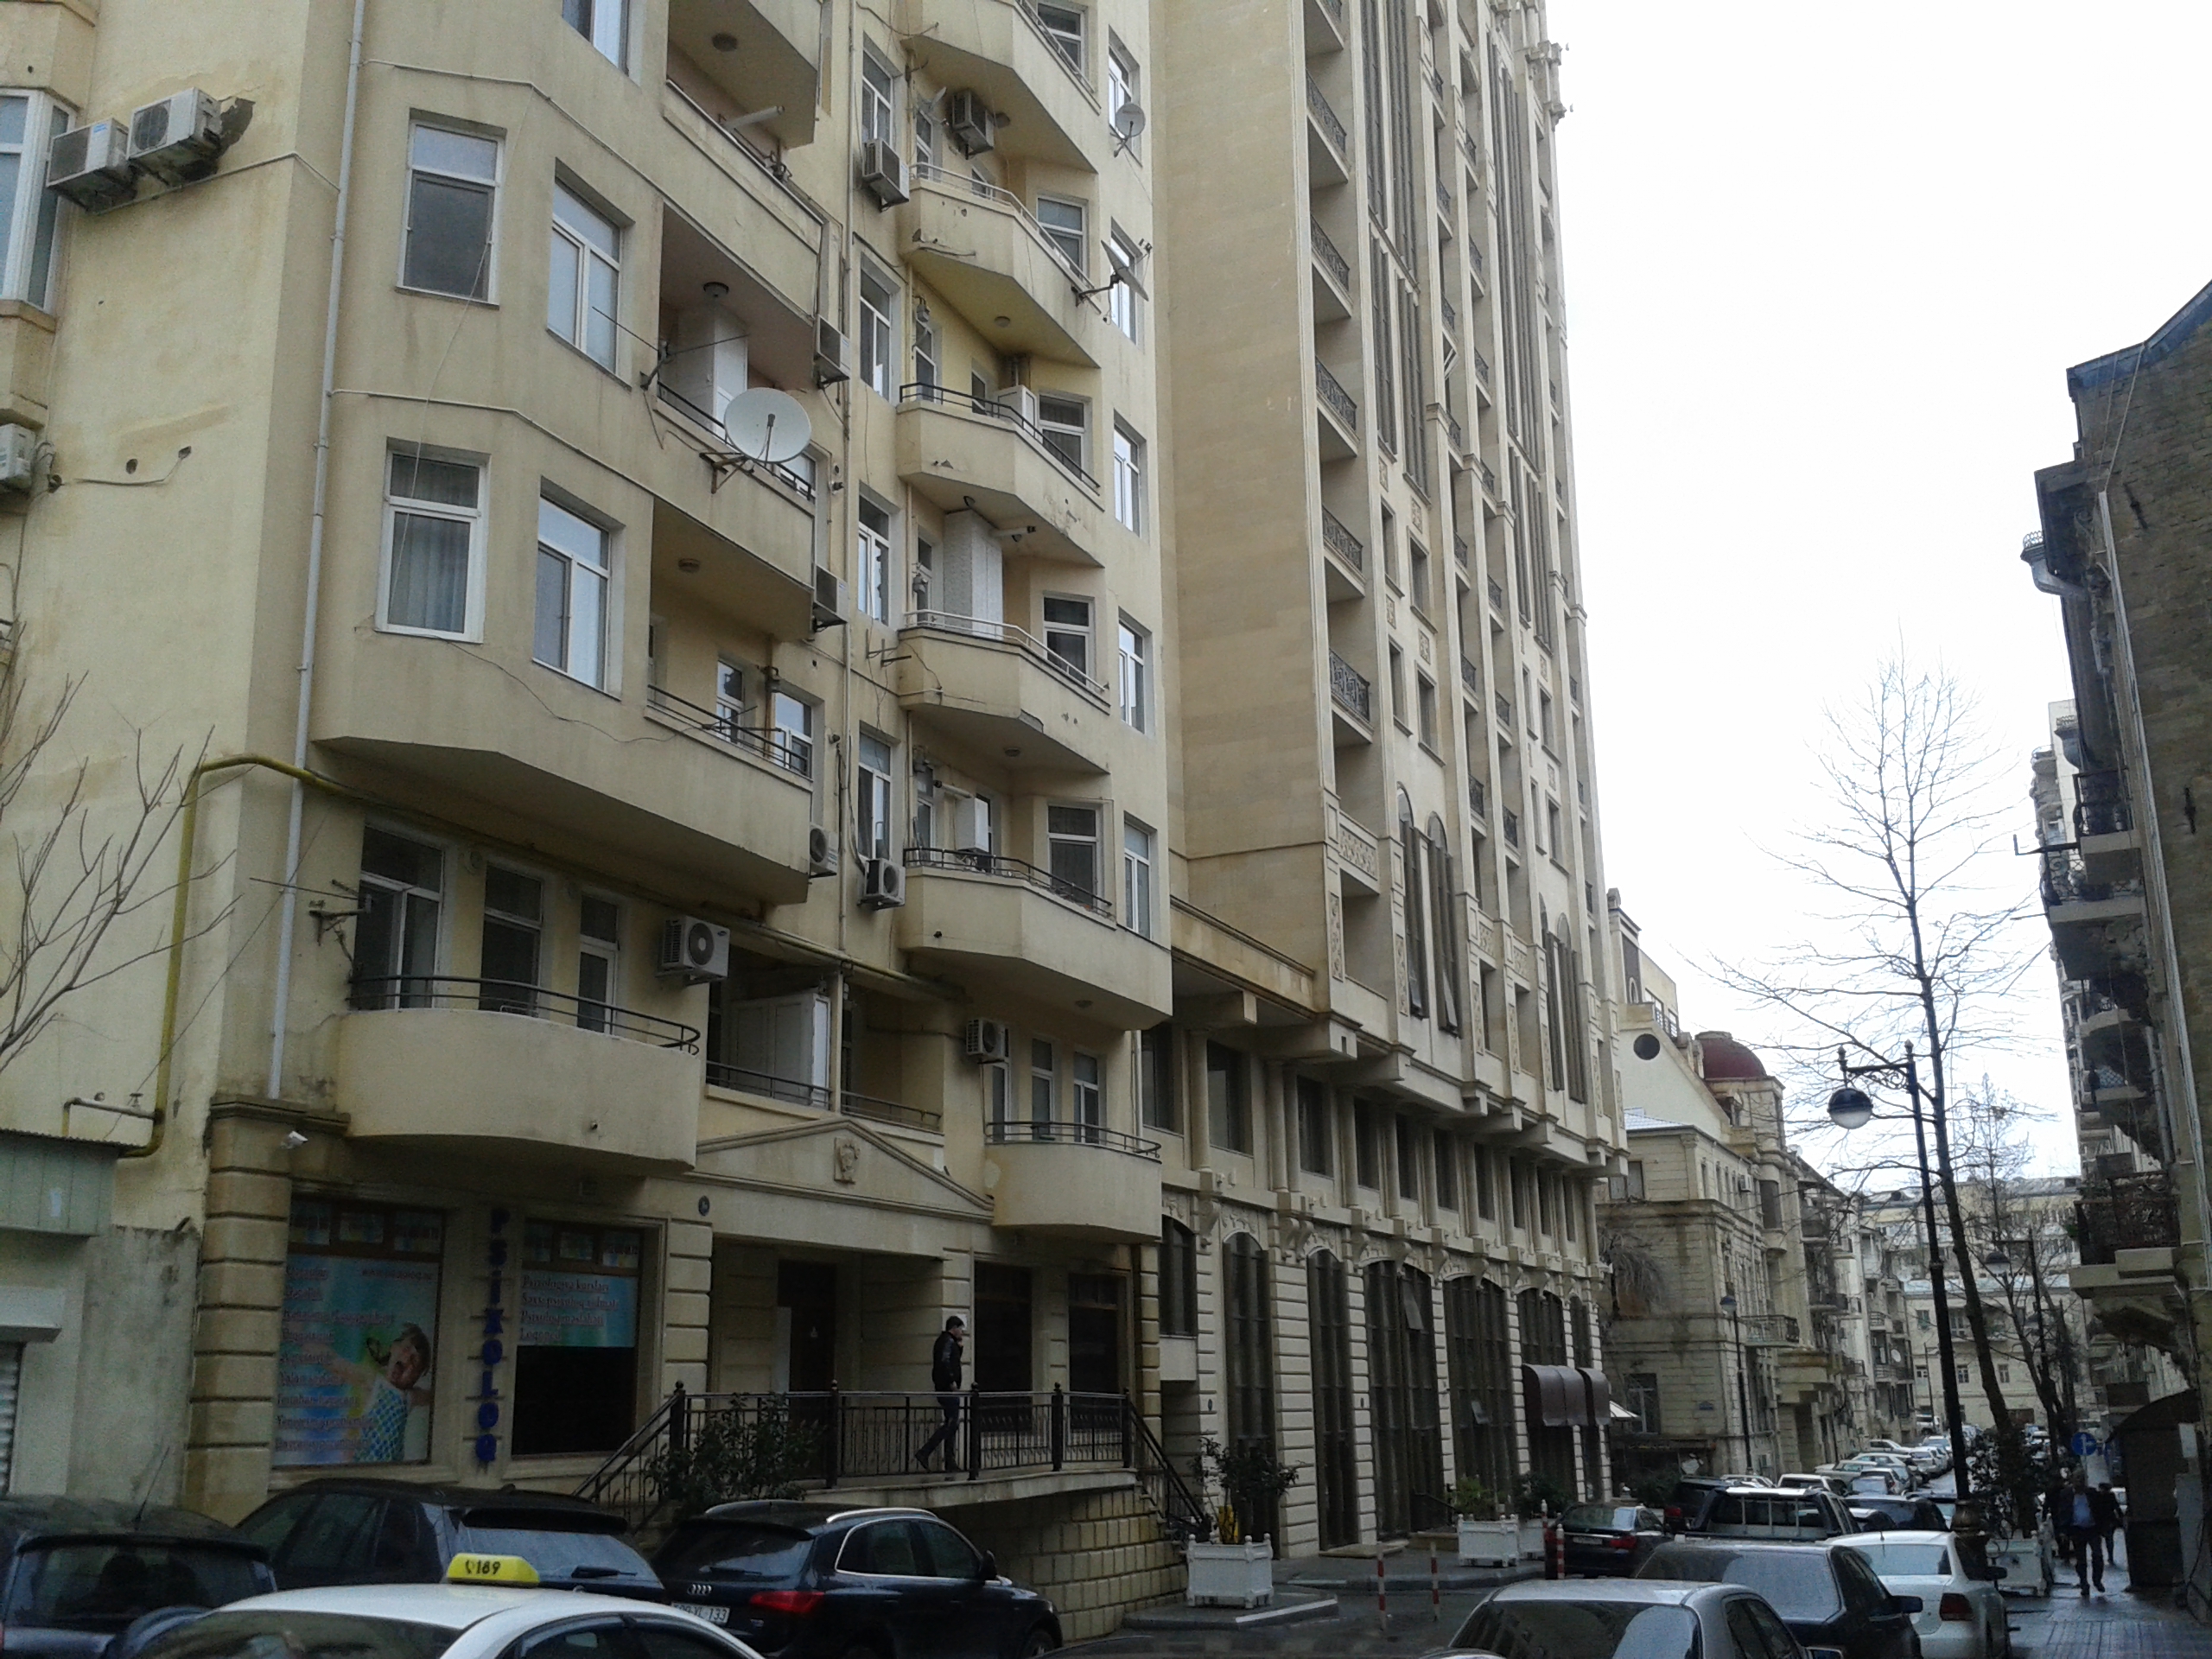 Əli Əsədovun yaşadığı bina(solda) ”Azimport” şirkəti sağda